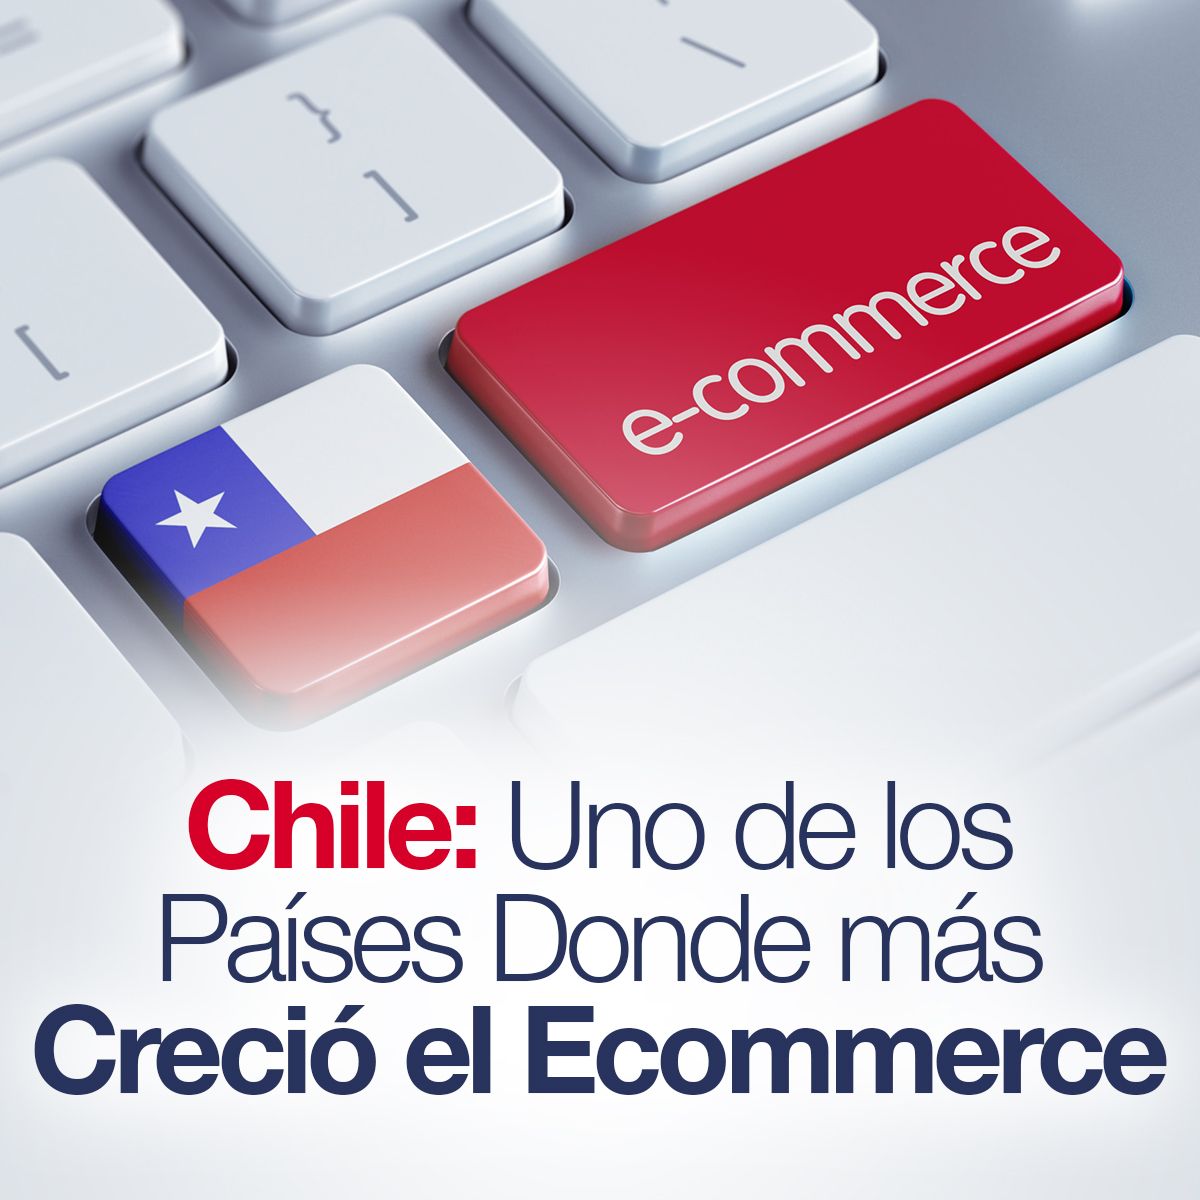 Chile: Uno de los Países Donde más Creció el Ecommerce